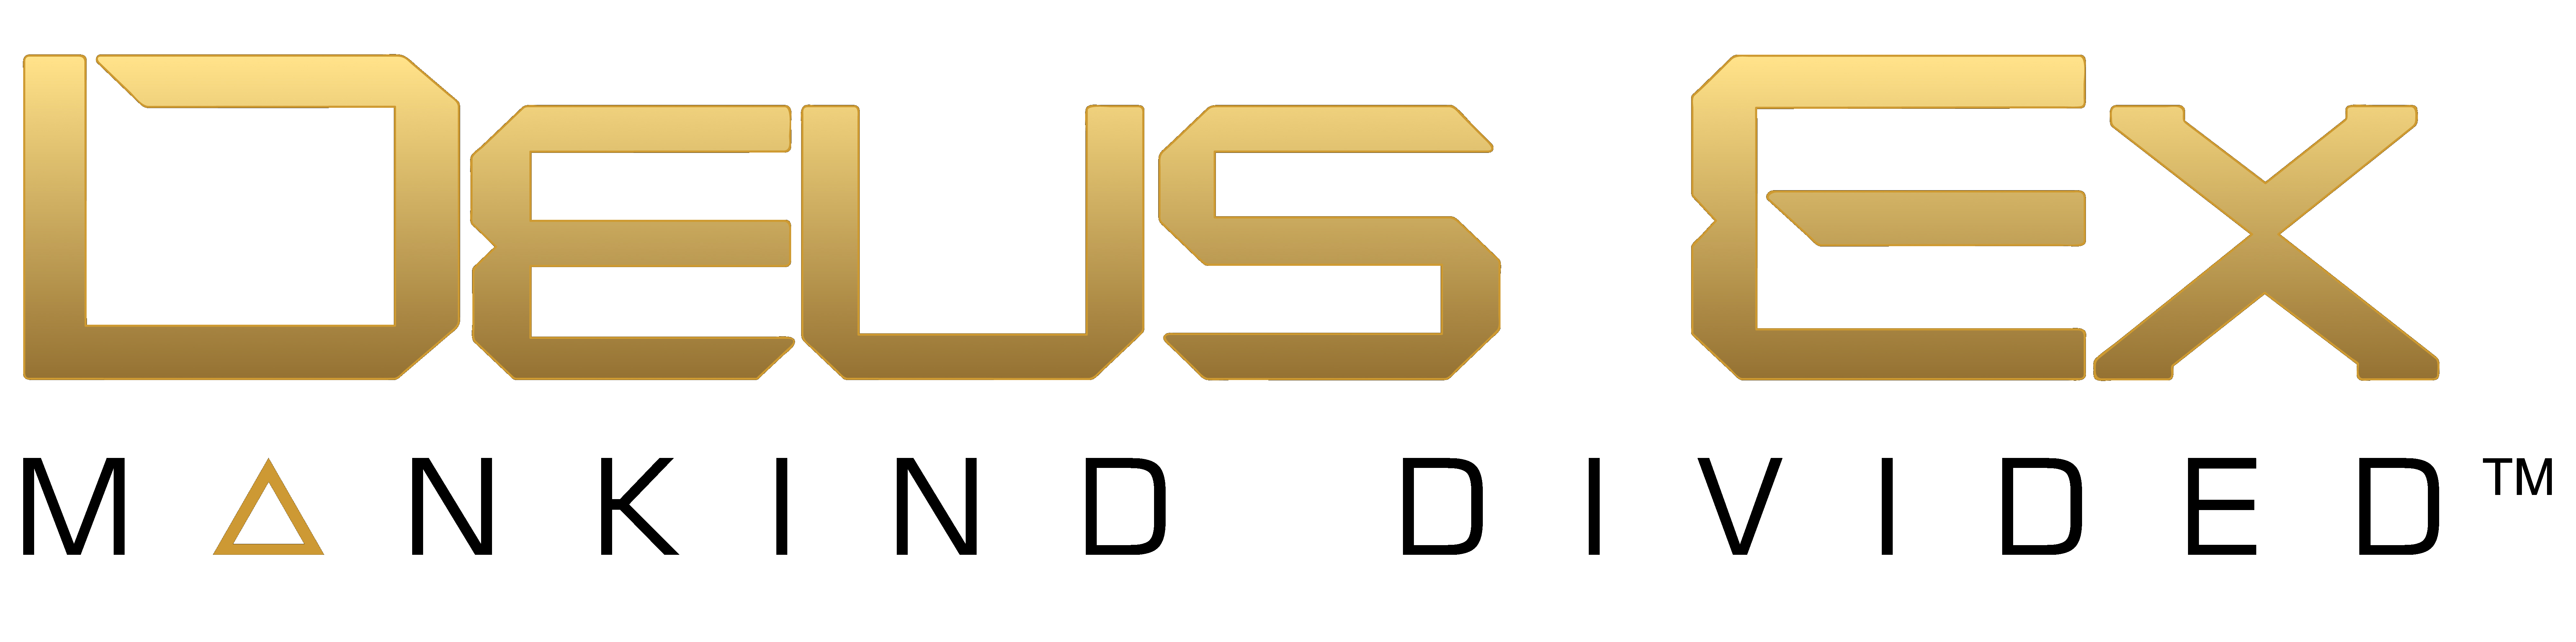 Deus Ex Logo Download Free PNG